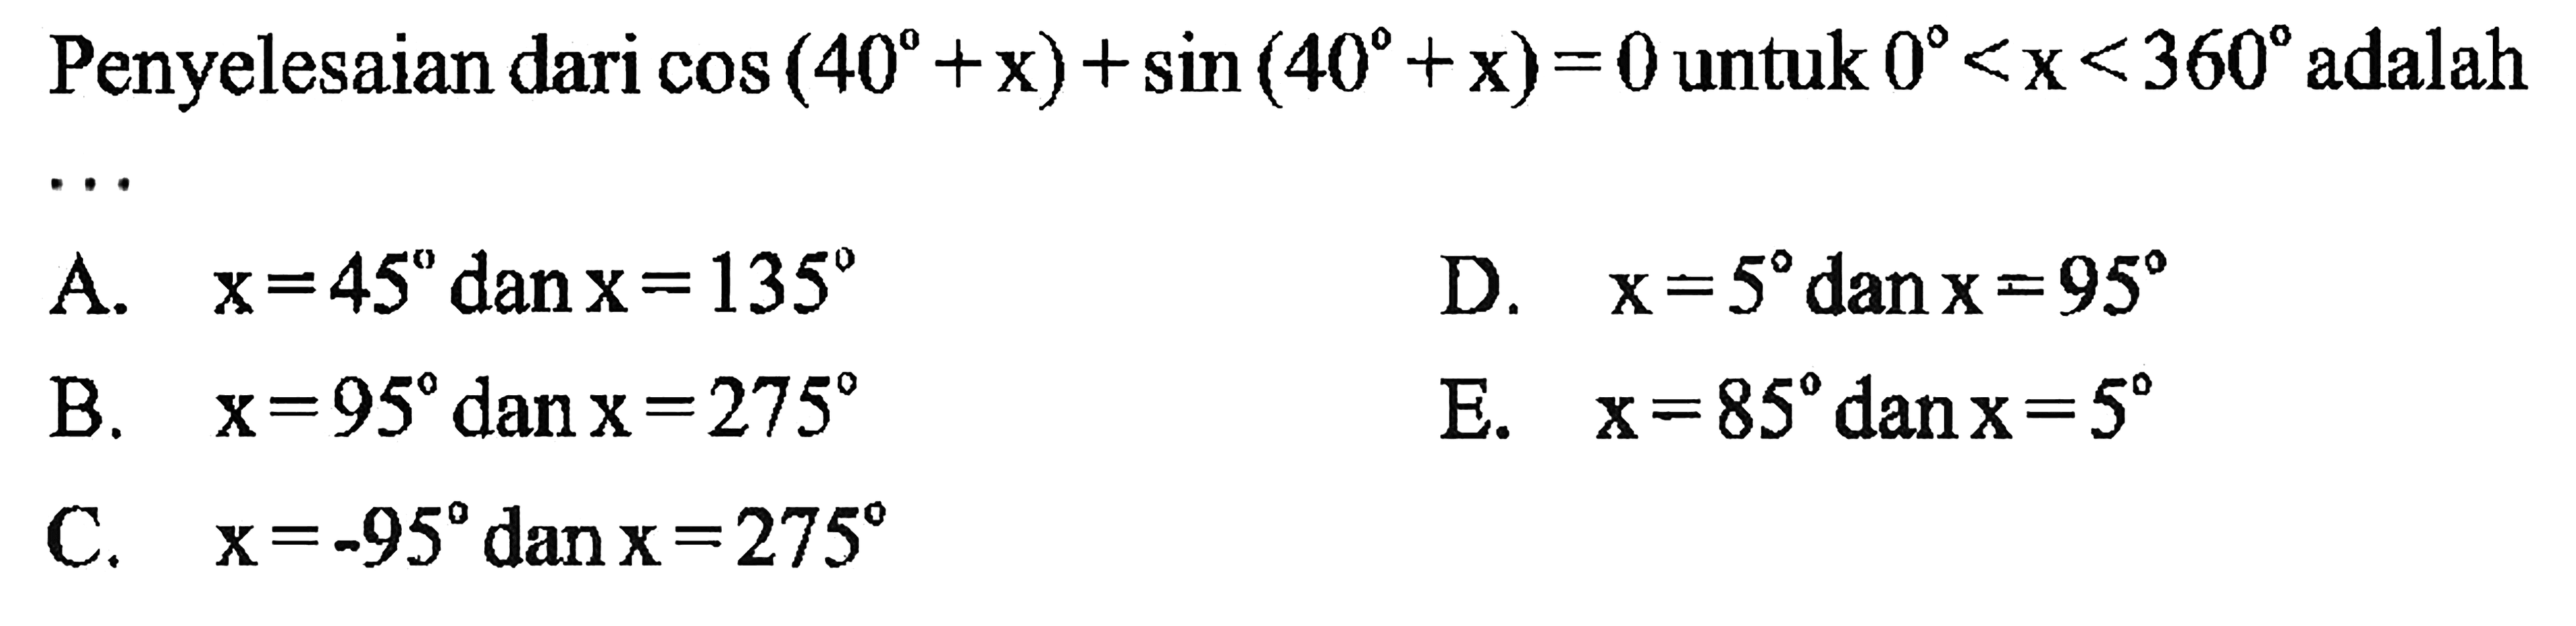 Penyelesaian dari cos (40+x)+sin (40+x)=0 untuk 0<x<360  adalah 